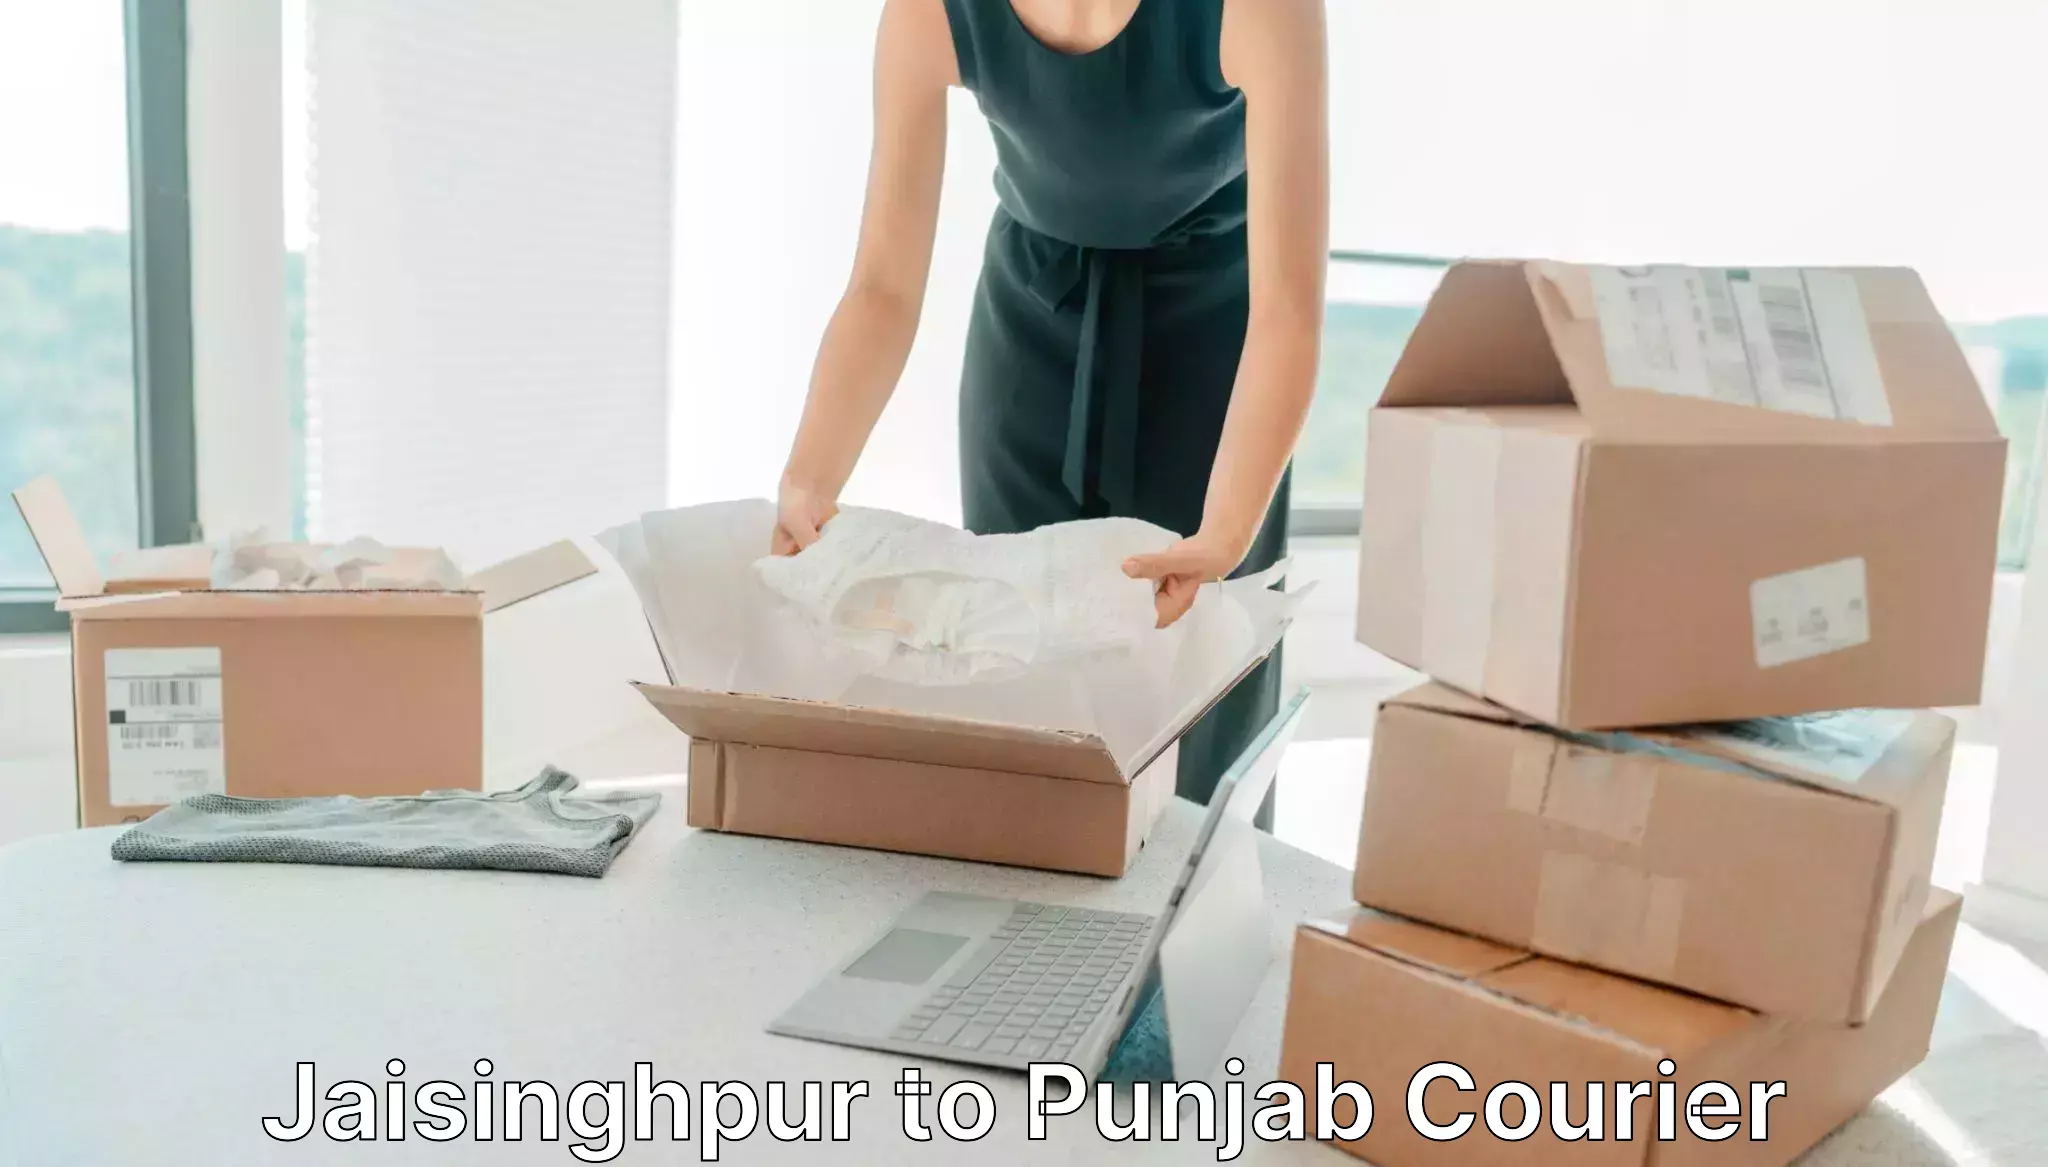 Next-generation courier services Jaisinghpur to Malout